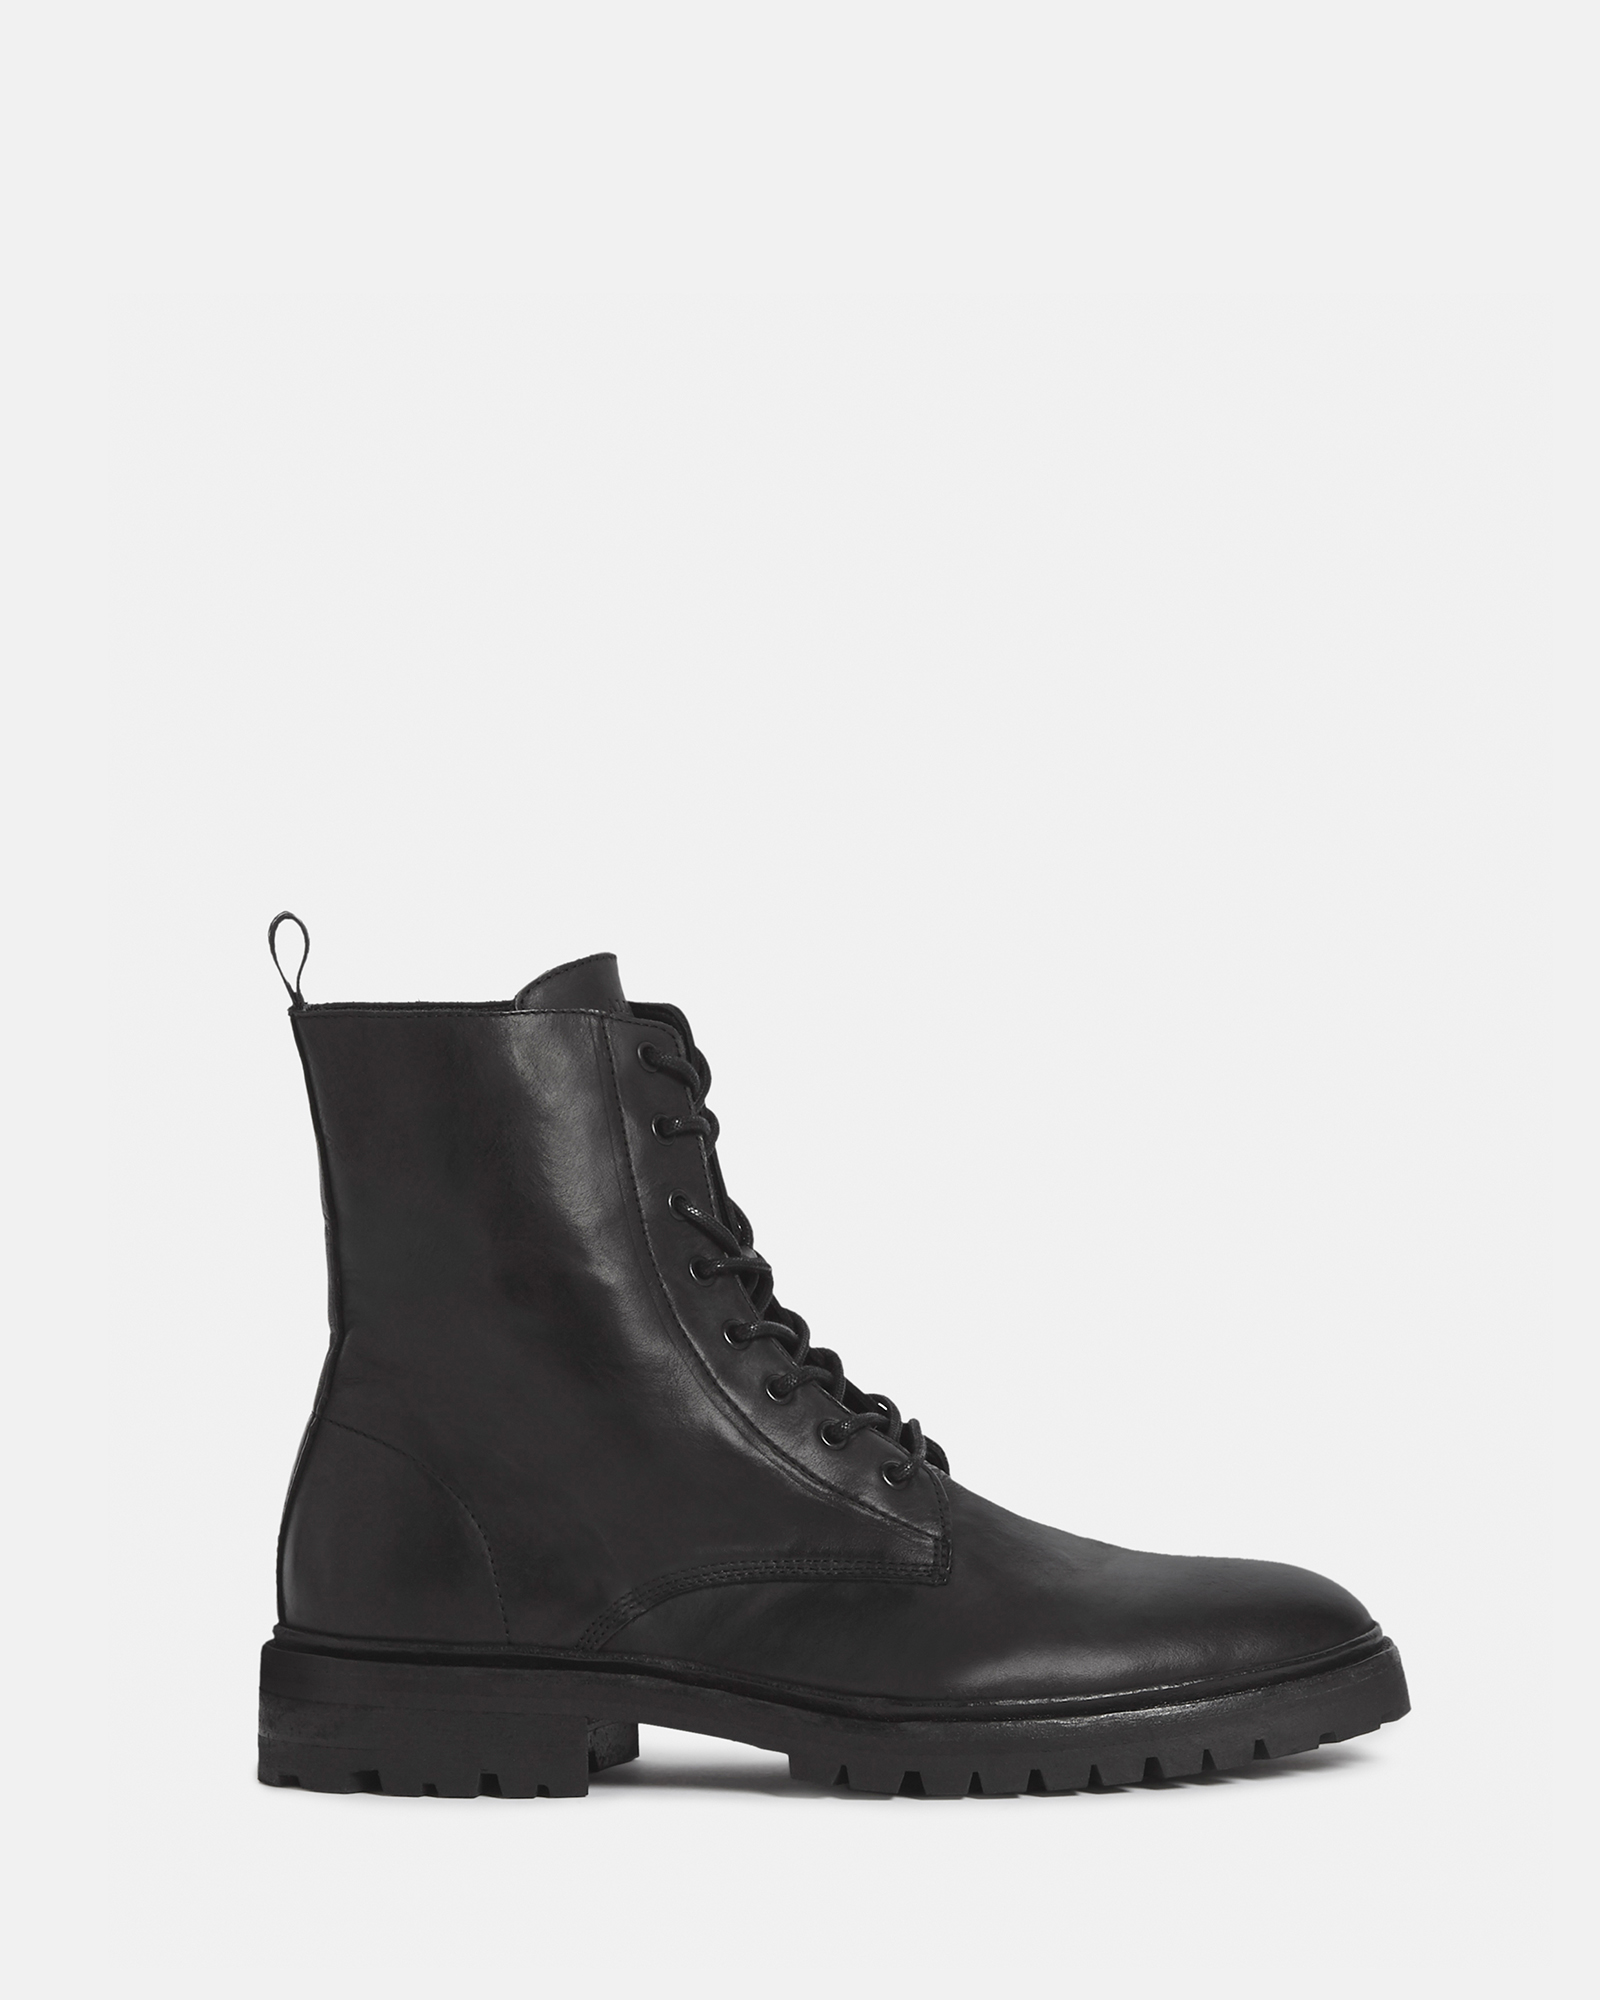 AllSaints Tobias Leather Boots,, Black